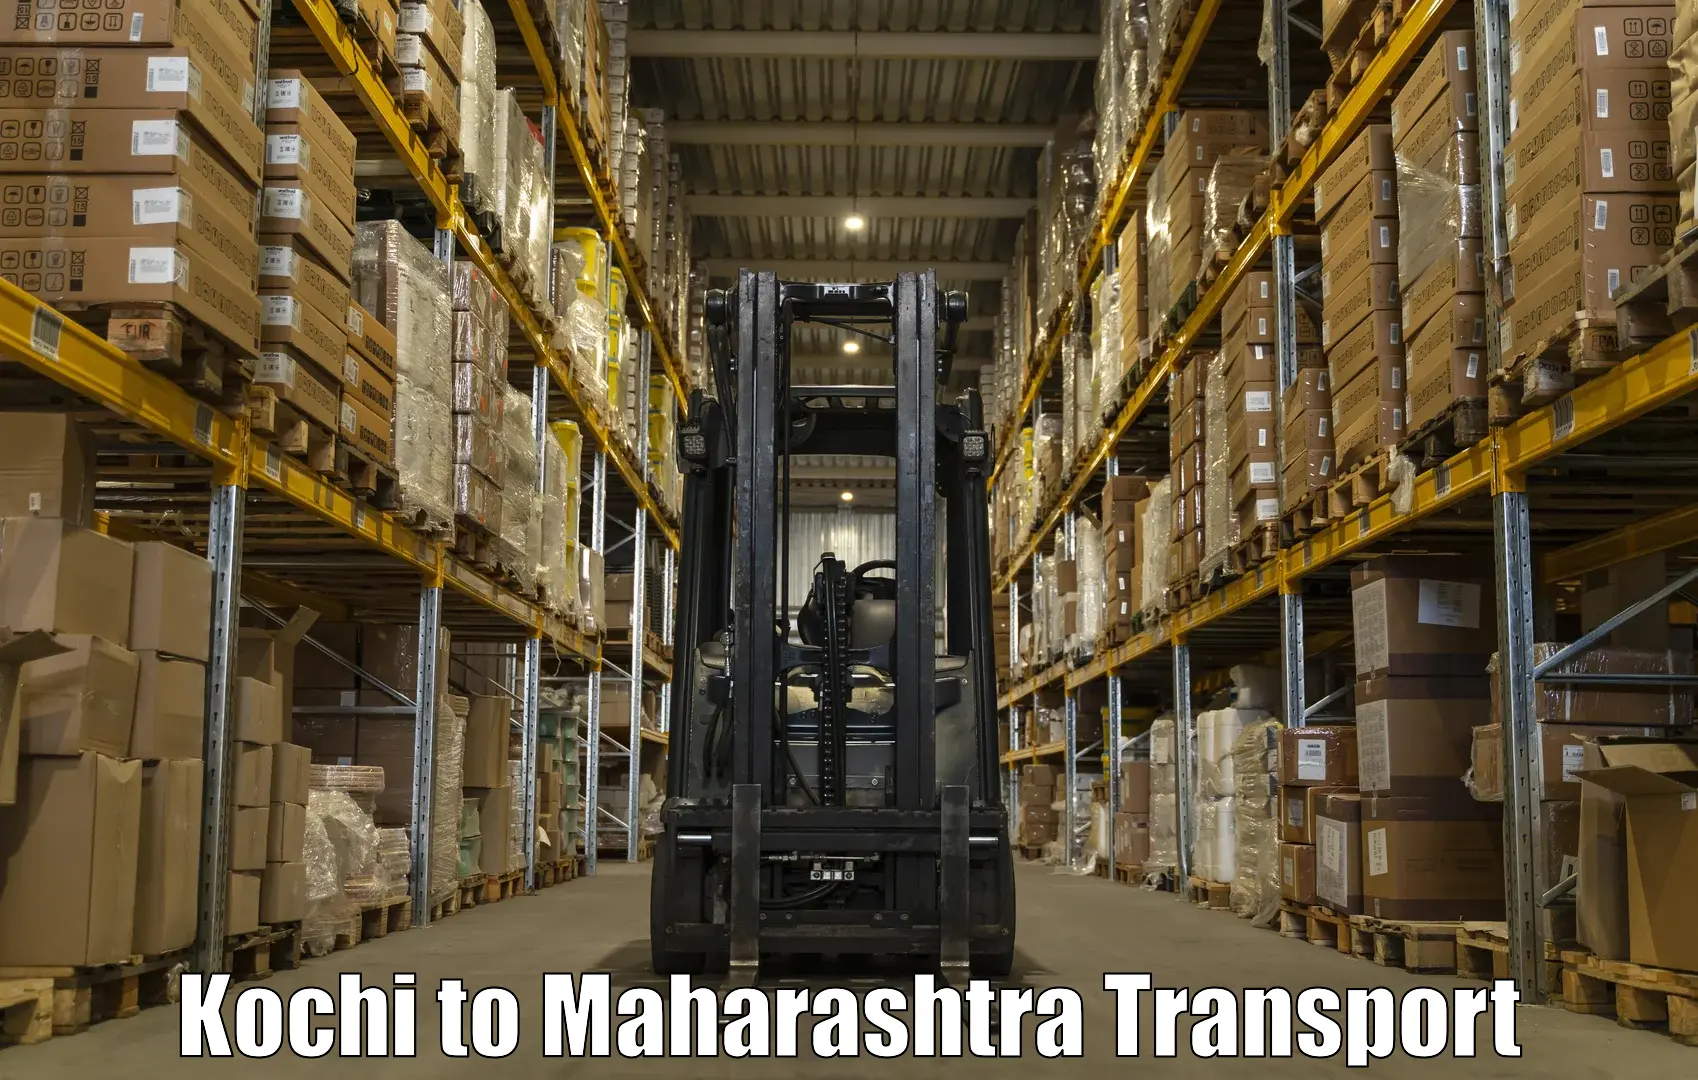 Vehicle parcel service Kochi to Andheri